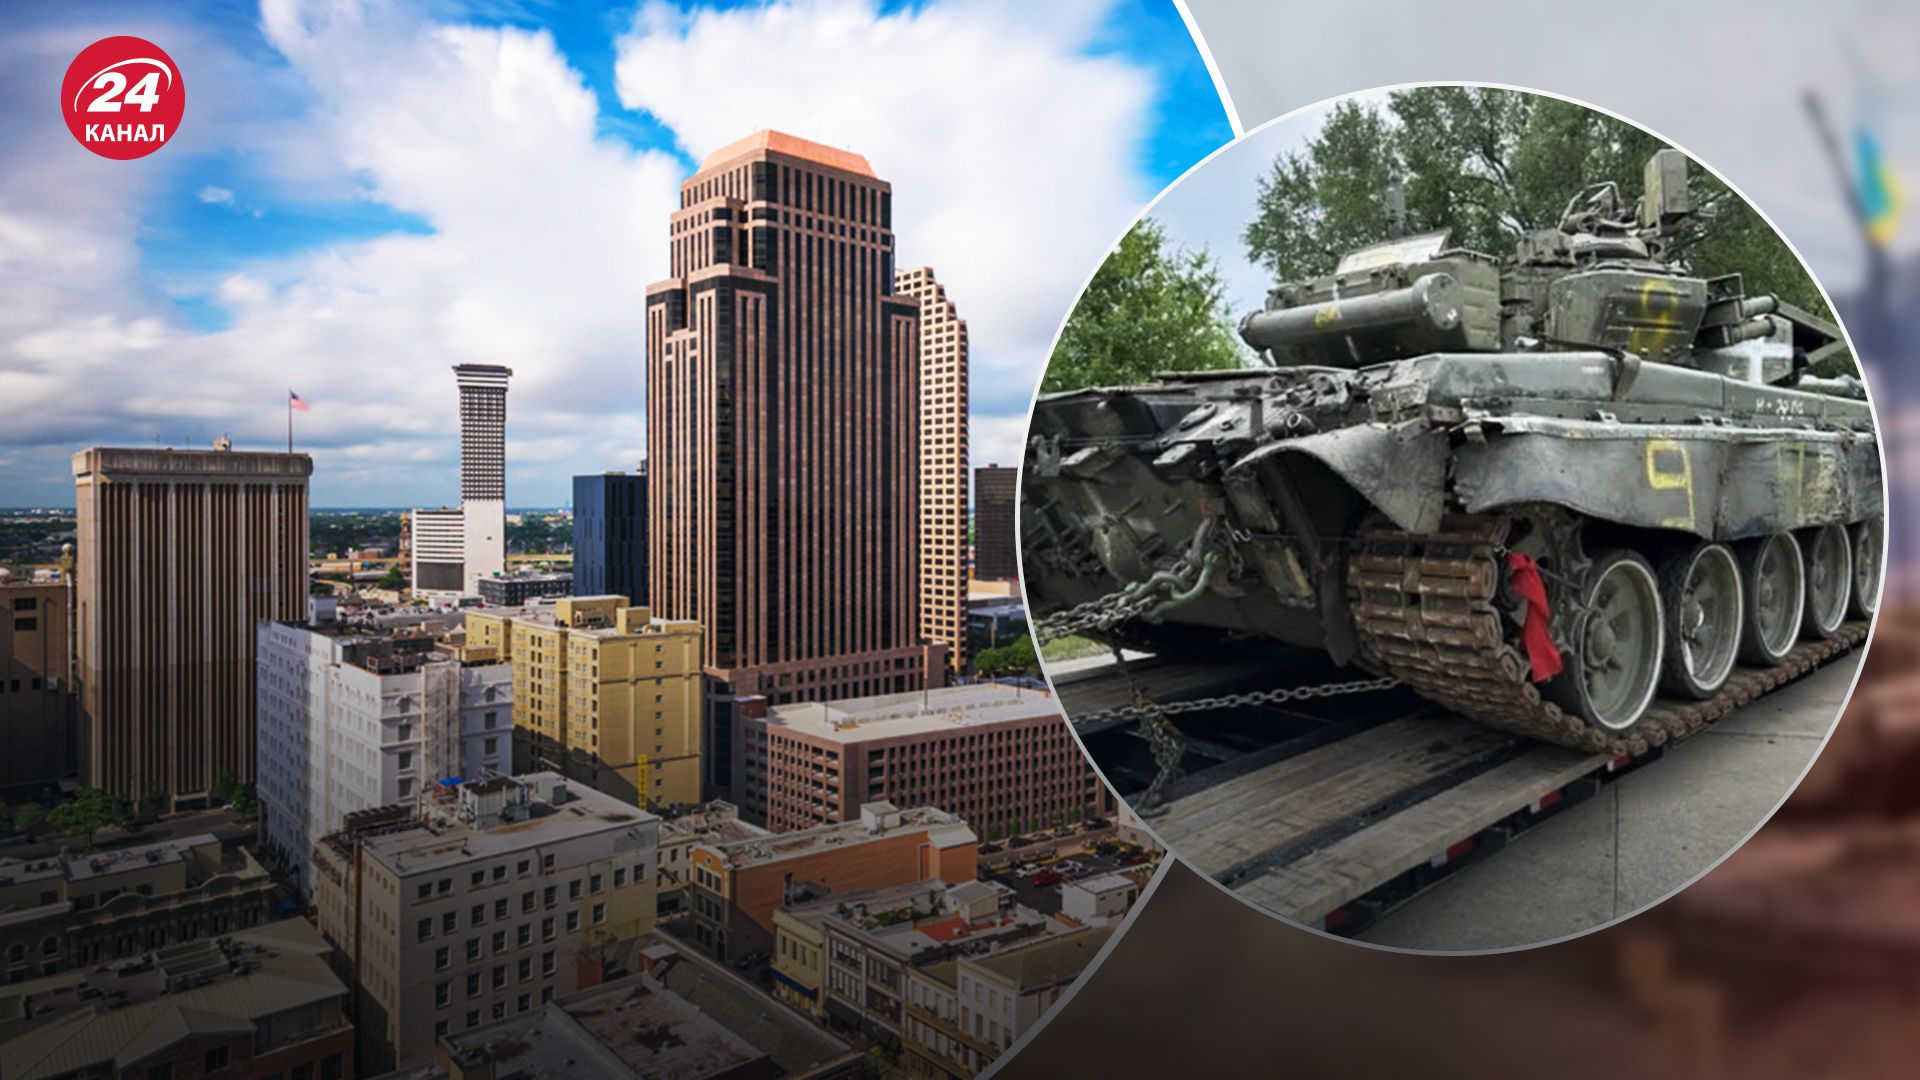 В США заметили трофейный российский танк Т-90А: как там оказался - неизвестно - 24 Канал